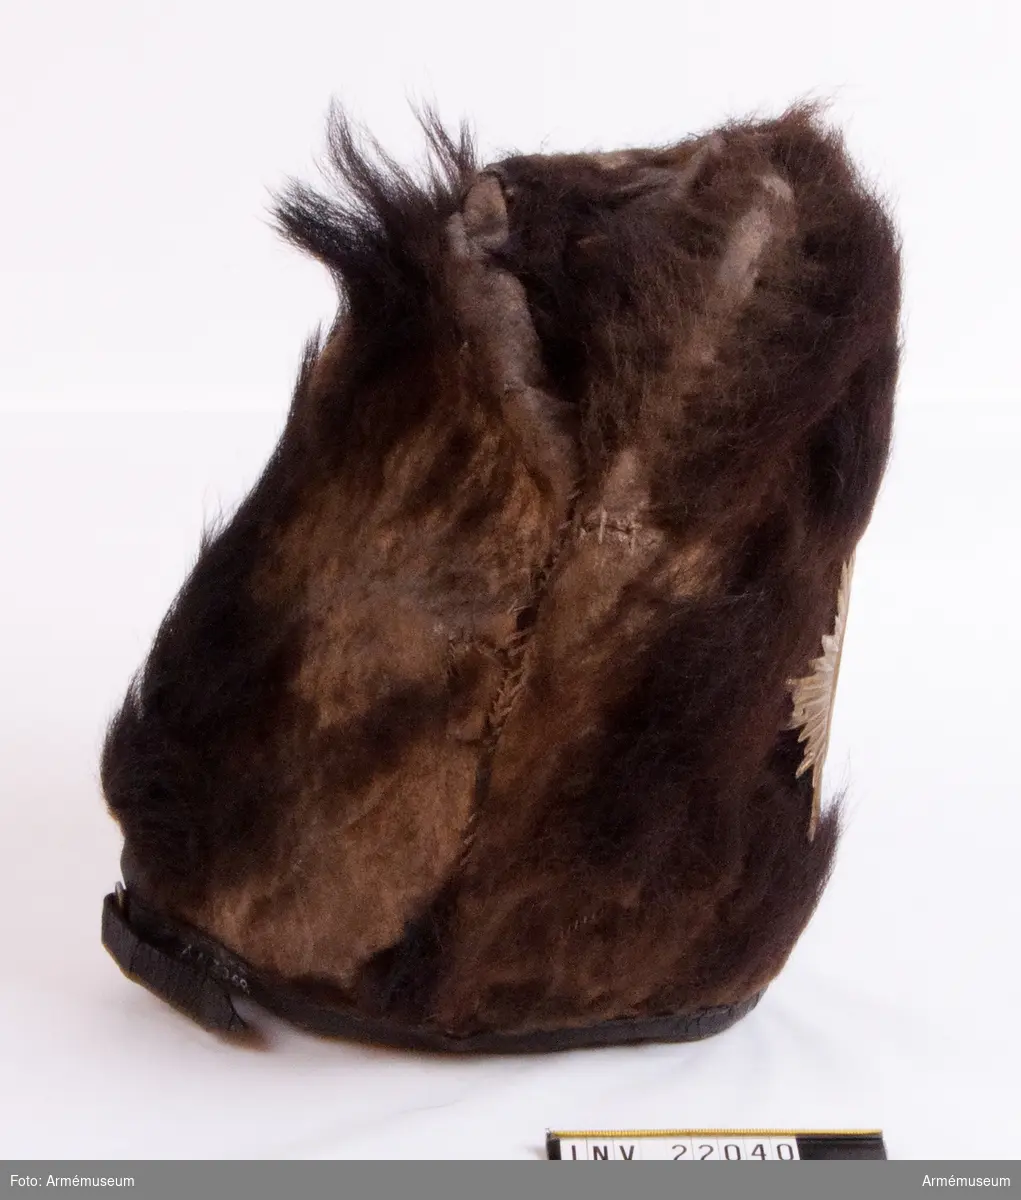 Mössan, som är helt tillverkad av björnskinn, är stoppad på en spjälram med innerhatt av filt. 
Mössan saknar brätte men har en läderrem fastsydd i nederkant med ett mässingsspänne bak.